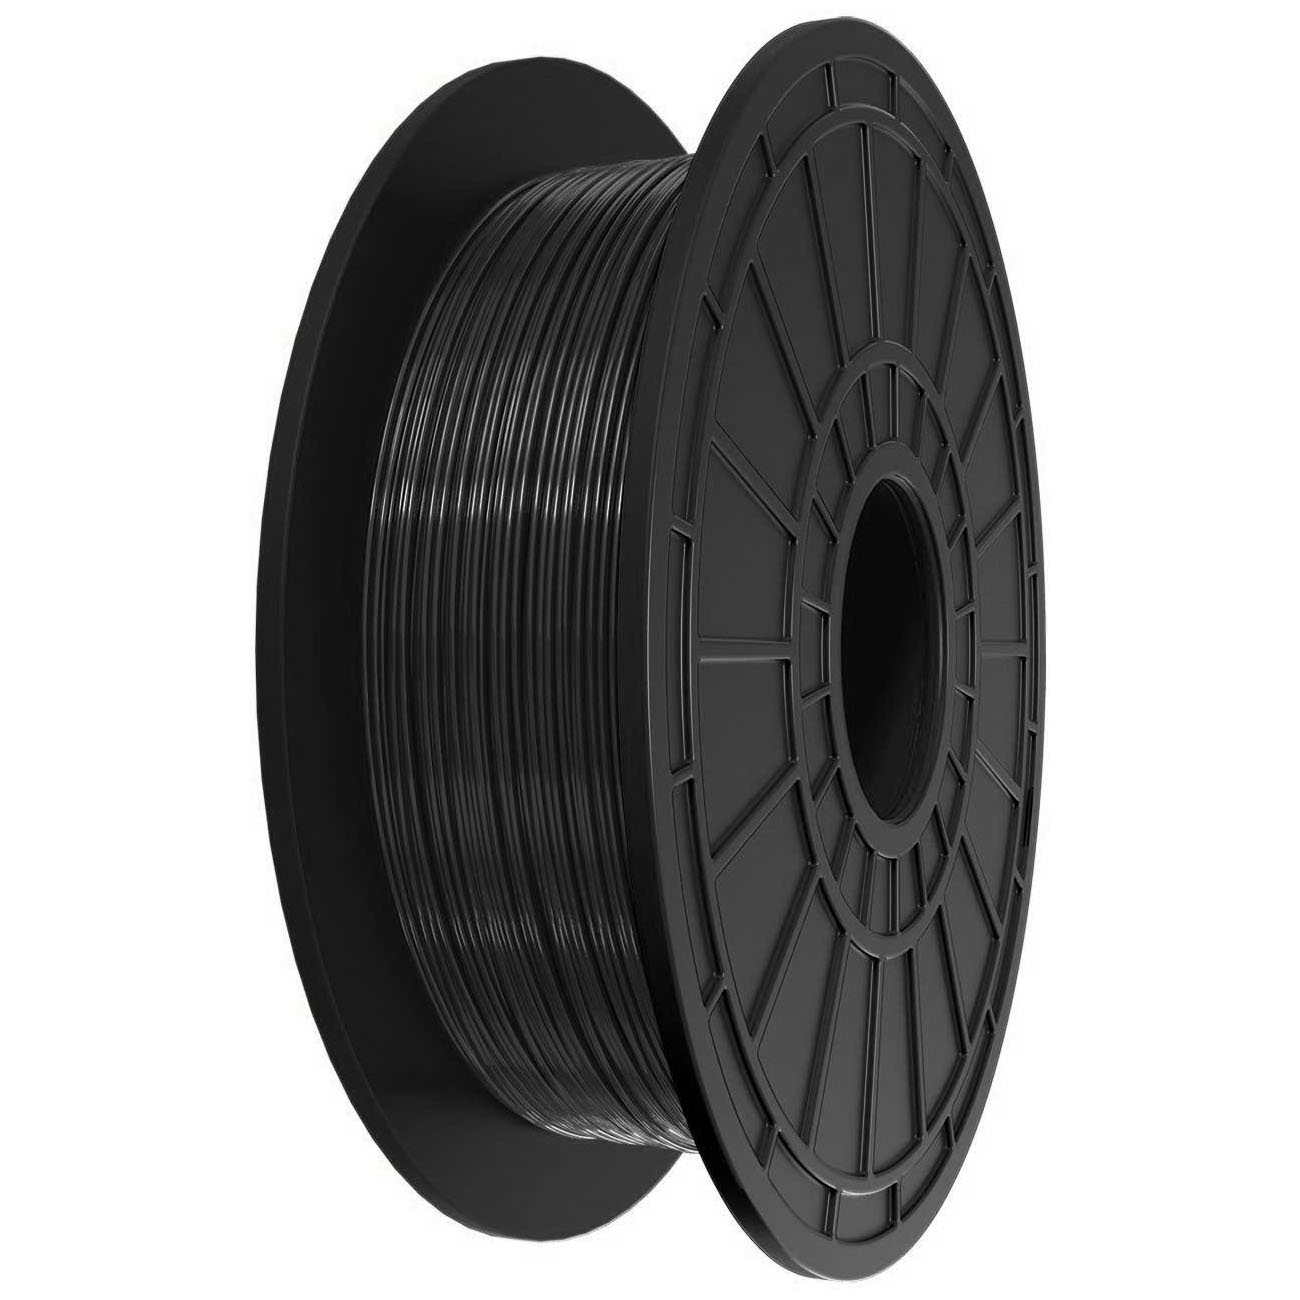 Plastique ABS en Fil Noir 1,75mm 0.5Kg (2pk)